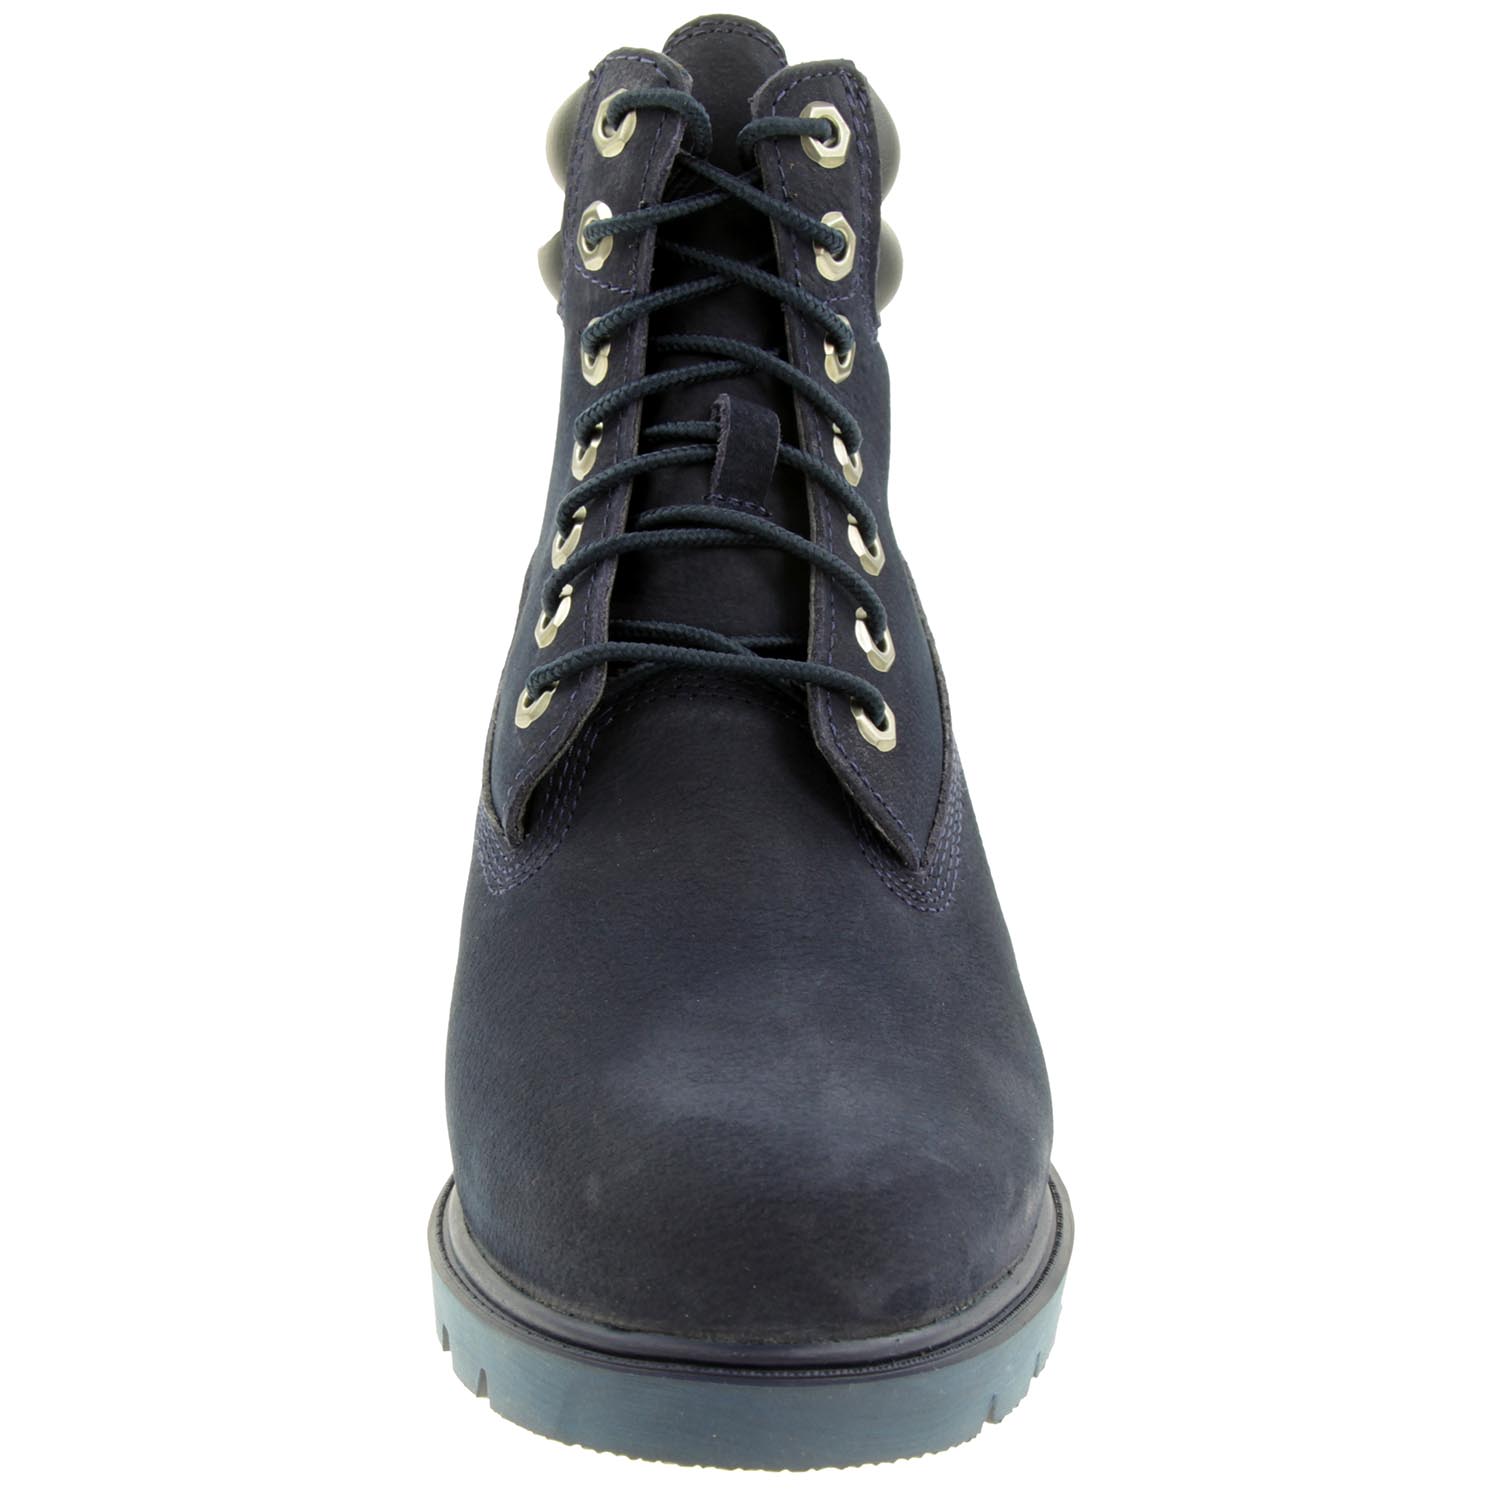 Timberland 6-Inch Basic Herren Stiefel Boots Waterproof navy Nubuck